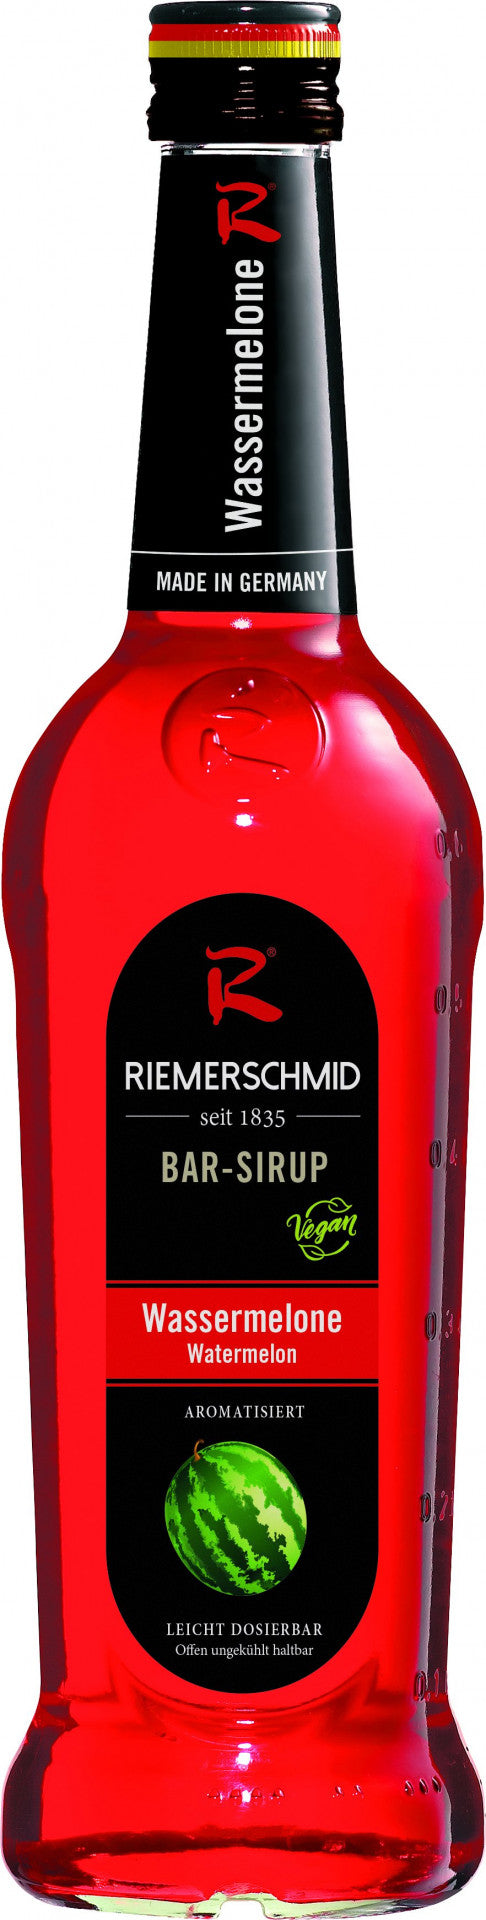 Riemerschmid Bar-Sirup Wassermelonen Geschmack 0,7L